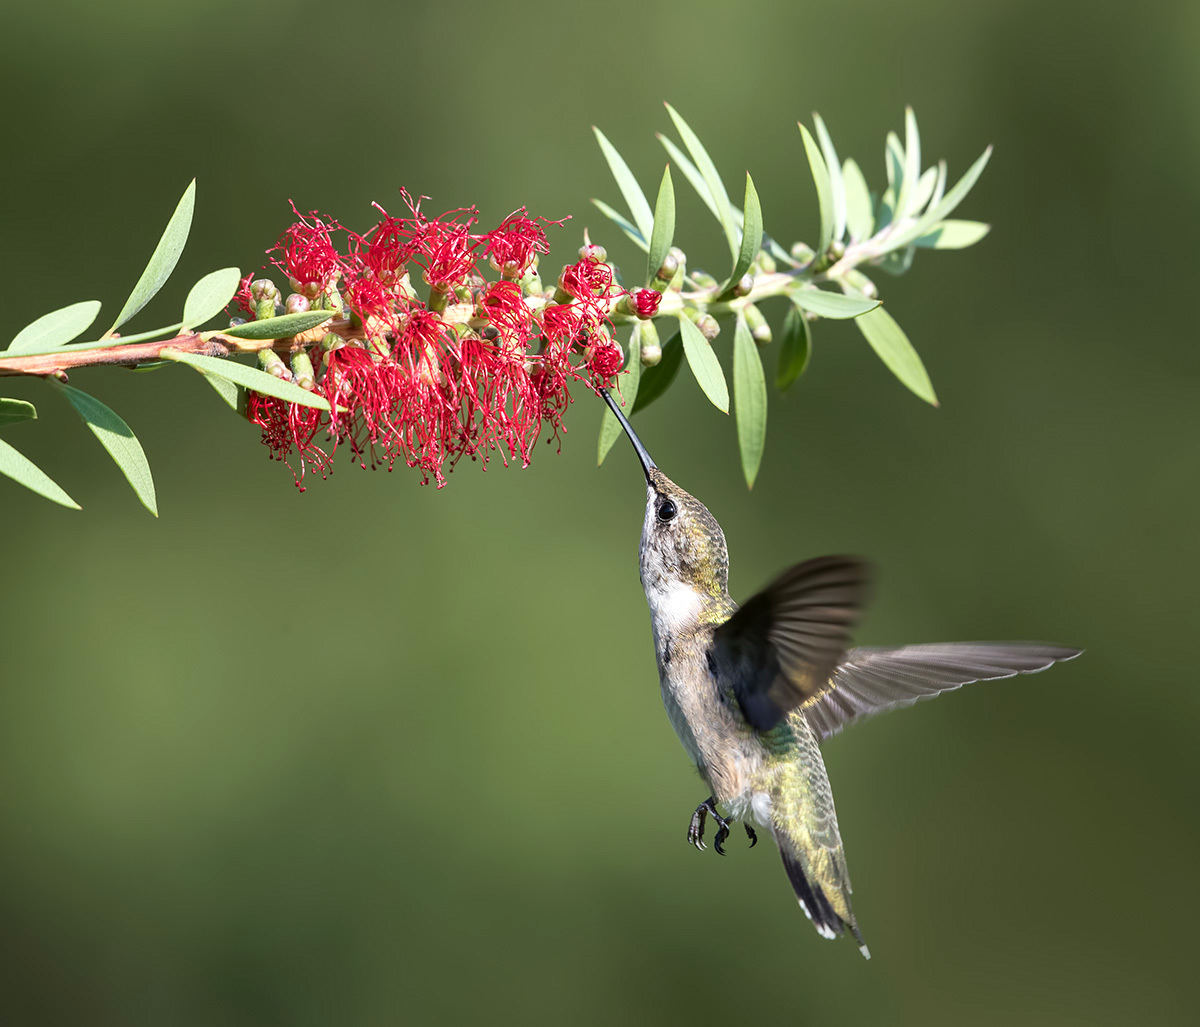 Naise Anne Hummingbird lähedal õitsev kalliskinnitus